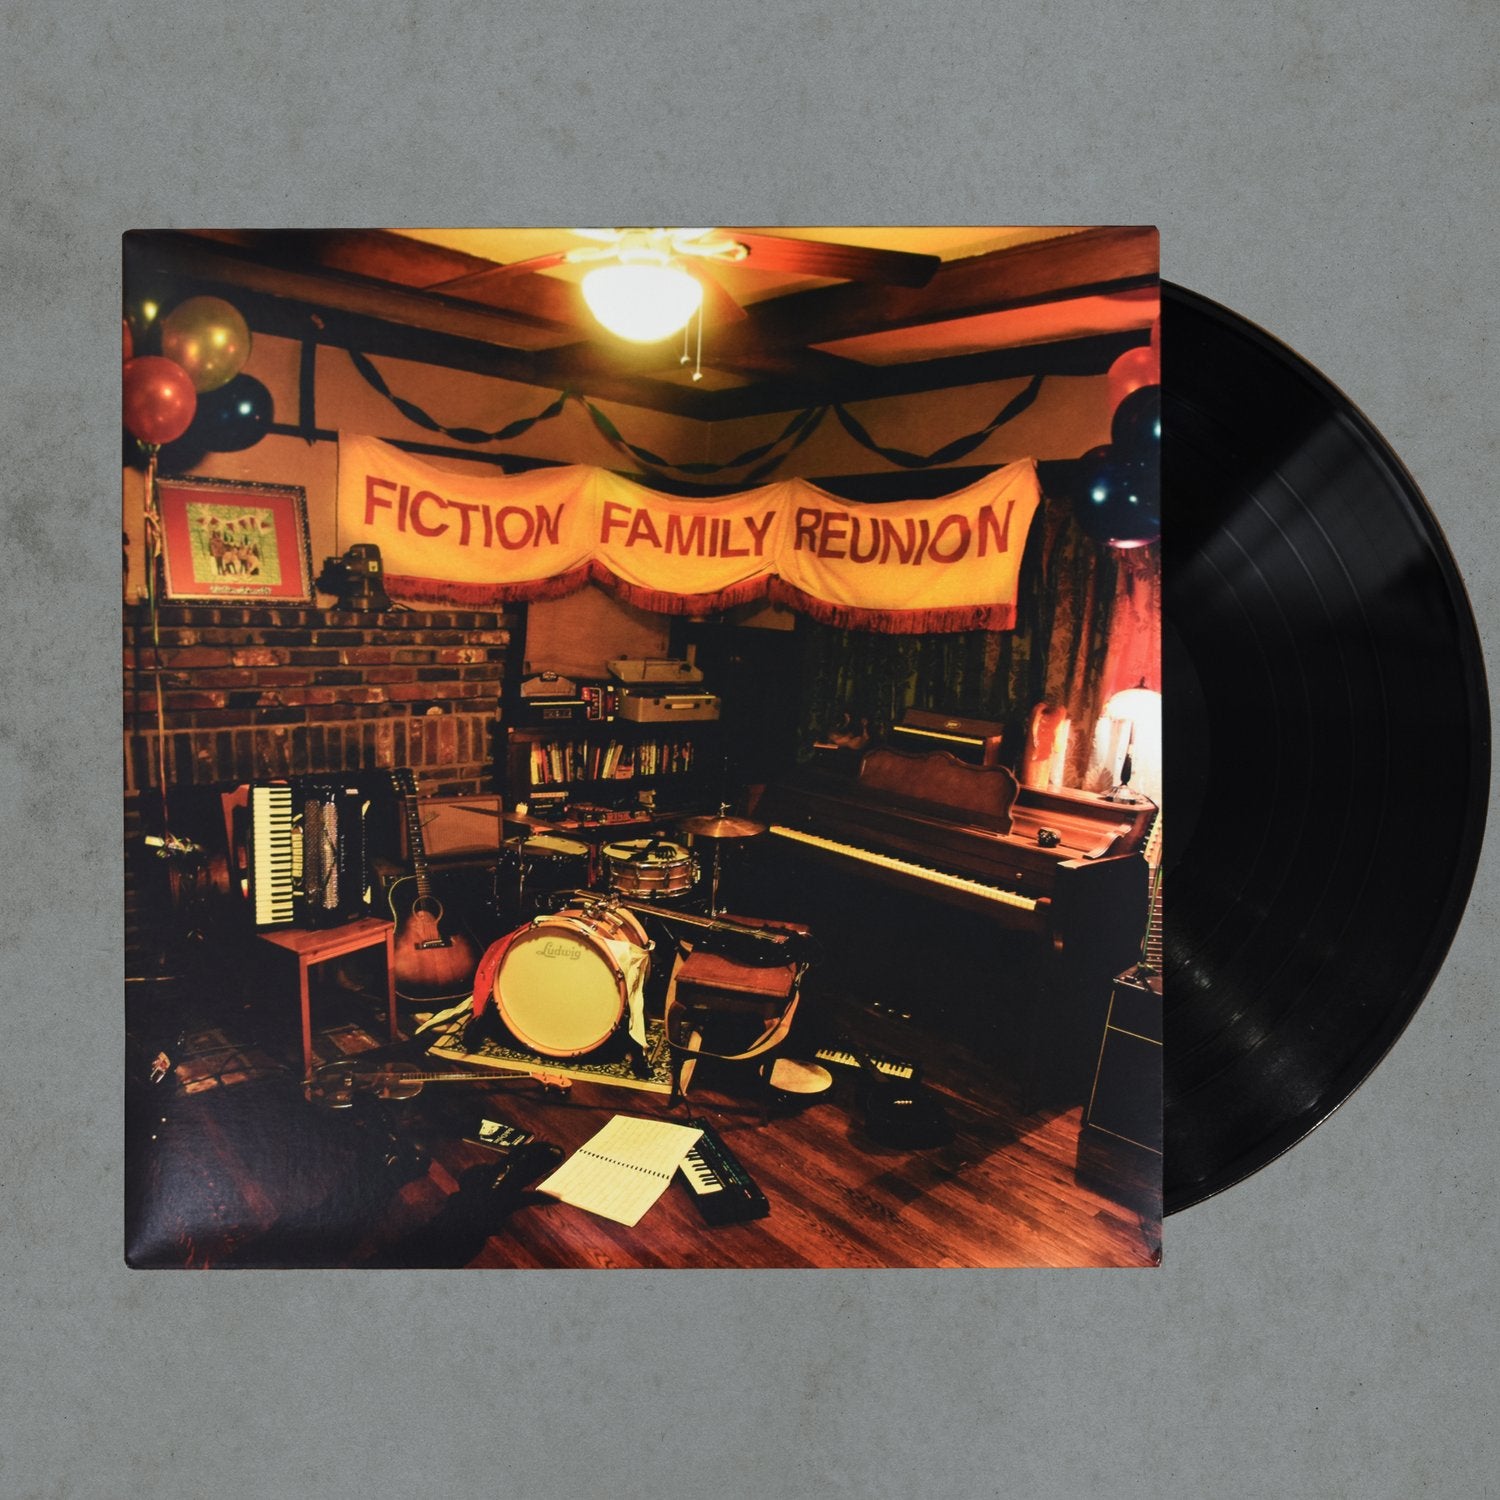 Fiction Family: Fiction Family Reunion Vinyl LP